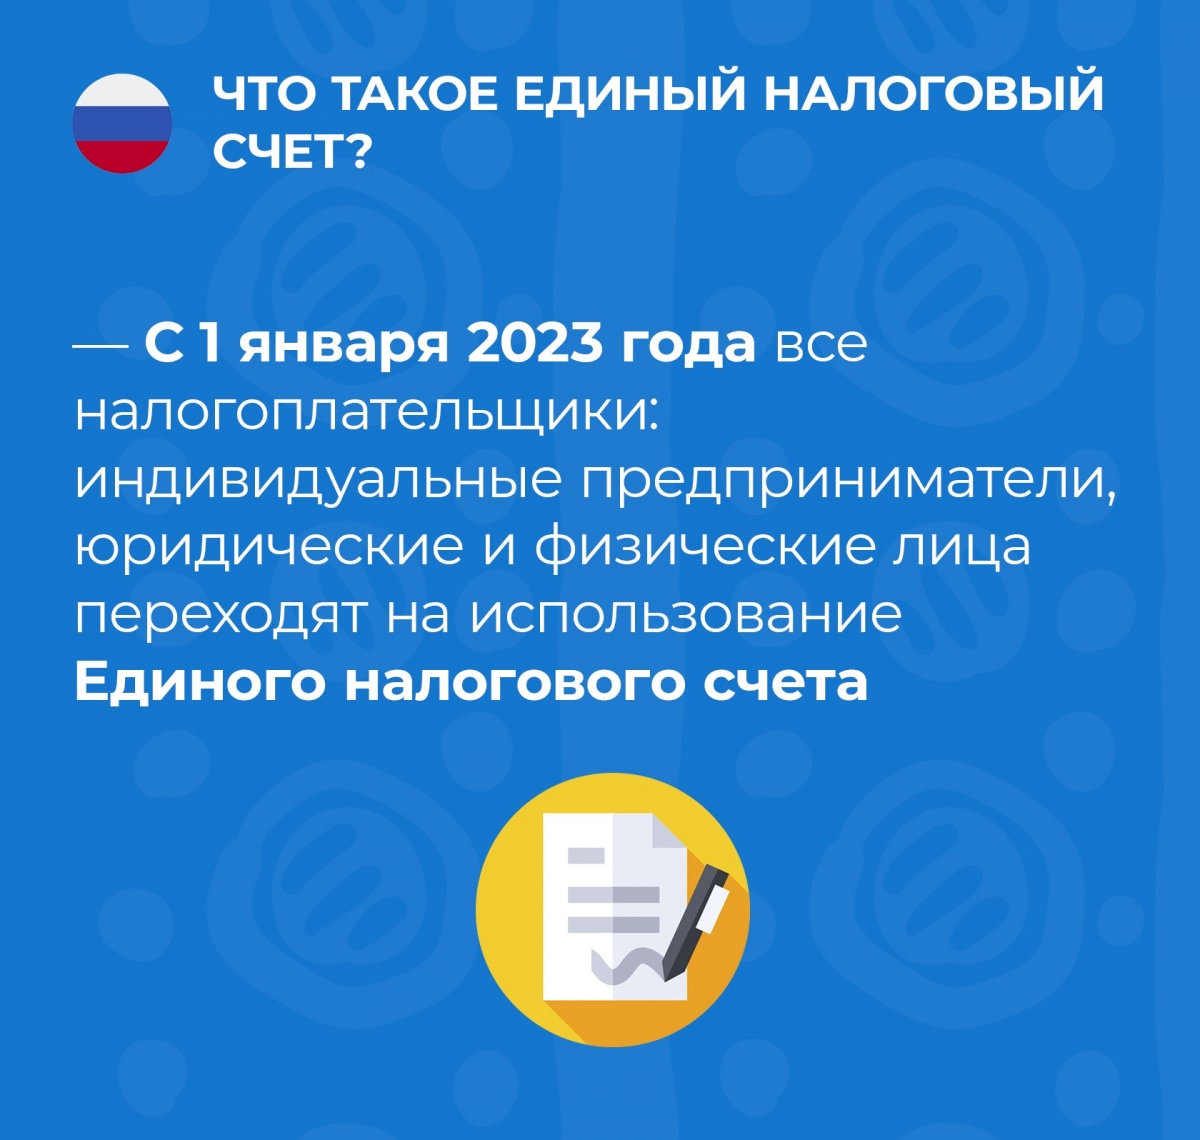 Как будет работать Единый налоговый счет, расскажет промостраница на сайте ФНС России.